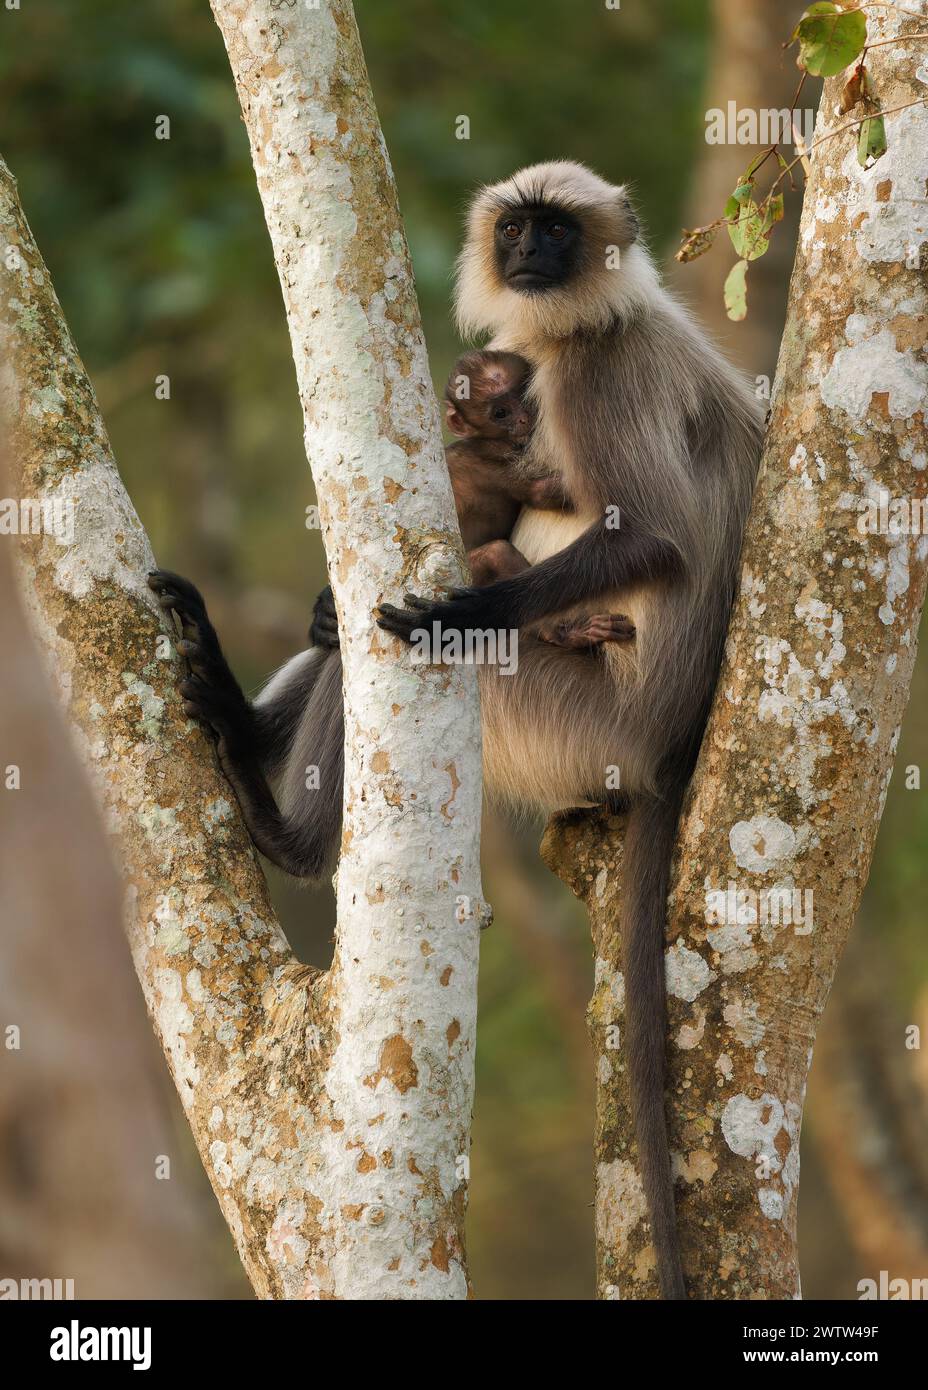 Gris à pieds noirs ou Malabar Sacred Langur - Semnopithecus hypoleucos, singe mangeur de feuilles de l'ancien monde trouvé dans le sud de l'Inde, femelle avec le baby-sitt Banque D'Images